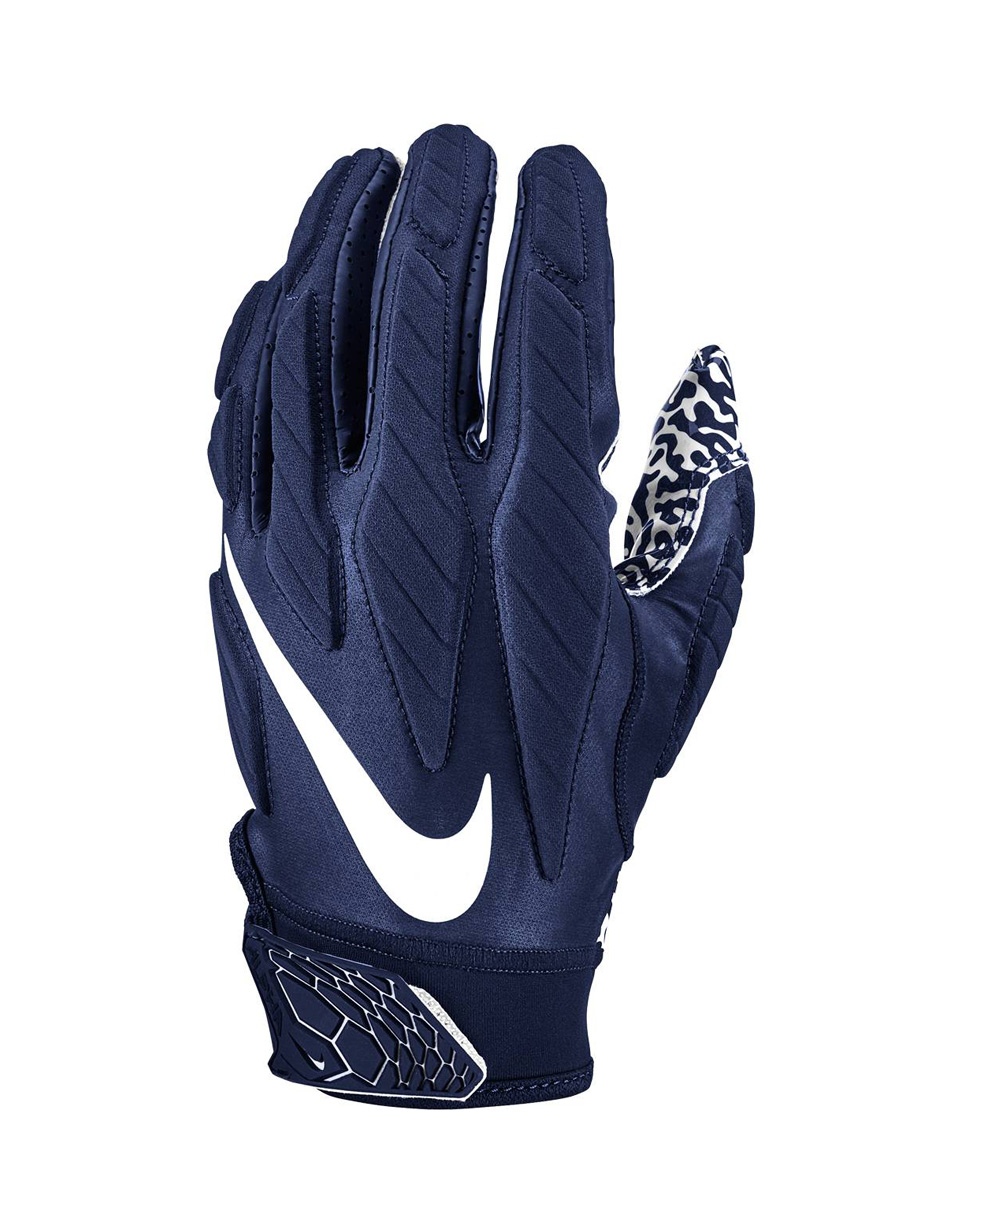 superbad 5.0 gloves